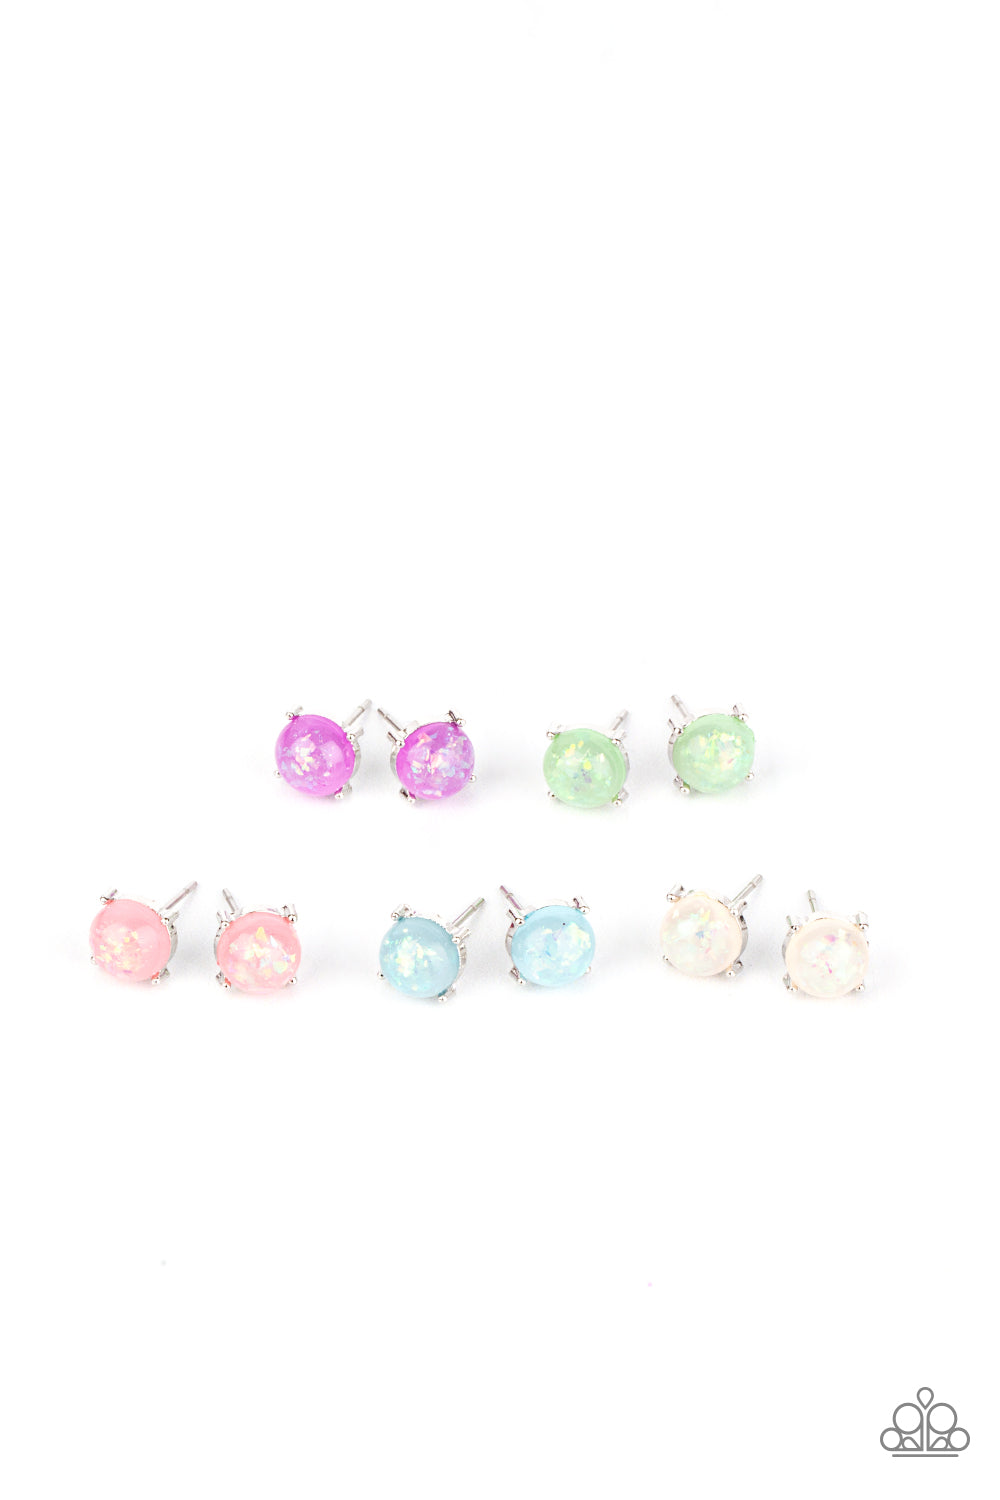 Starlet Shimmer Glittery Iridescent Stud Earring Pack♥ Starlet Shimmer Earrings♥ Paparazzi ♥